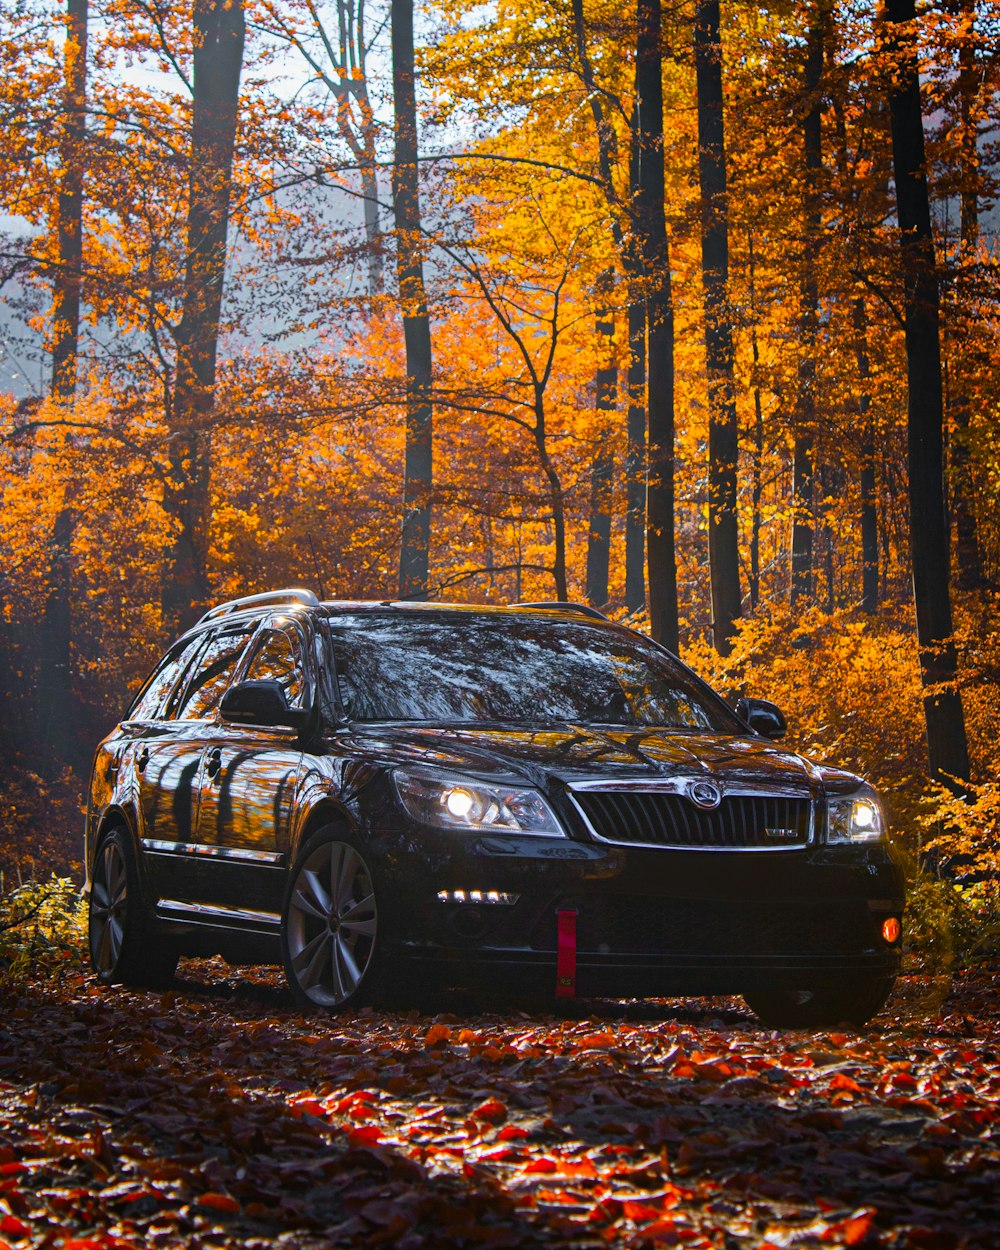 Une voiture noire garée au milieu d’une forêt